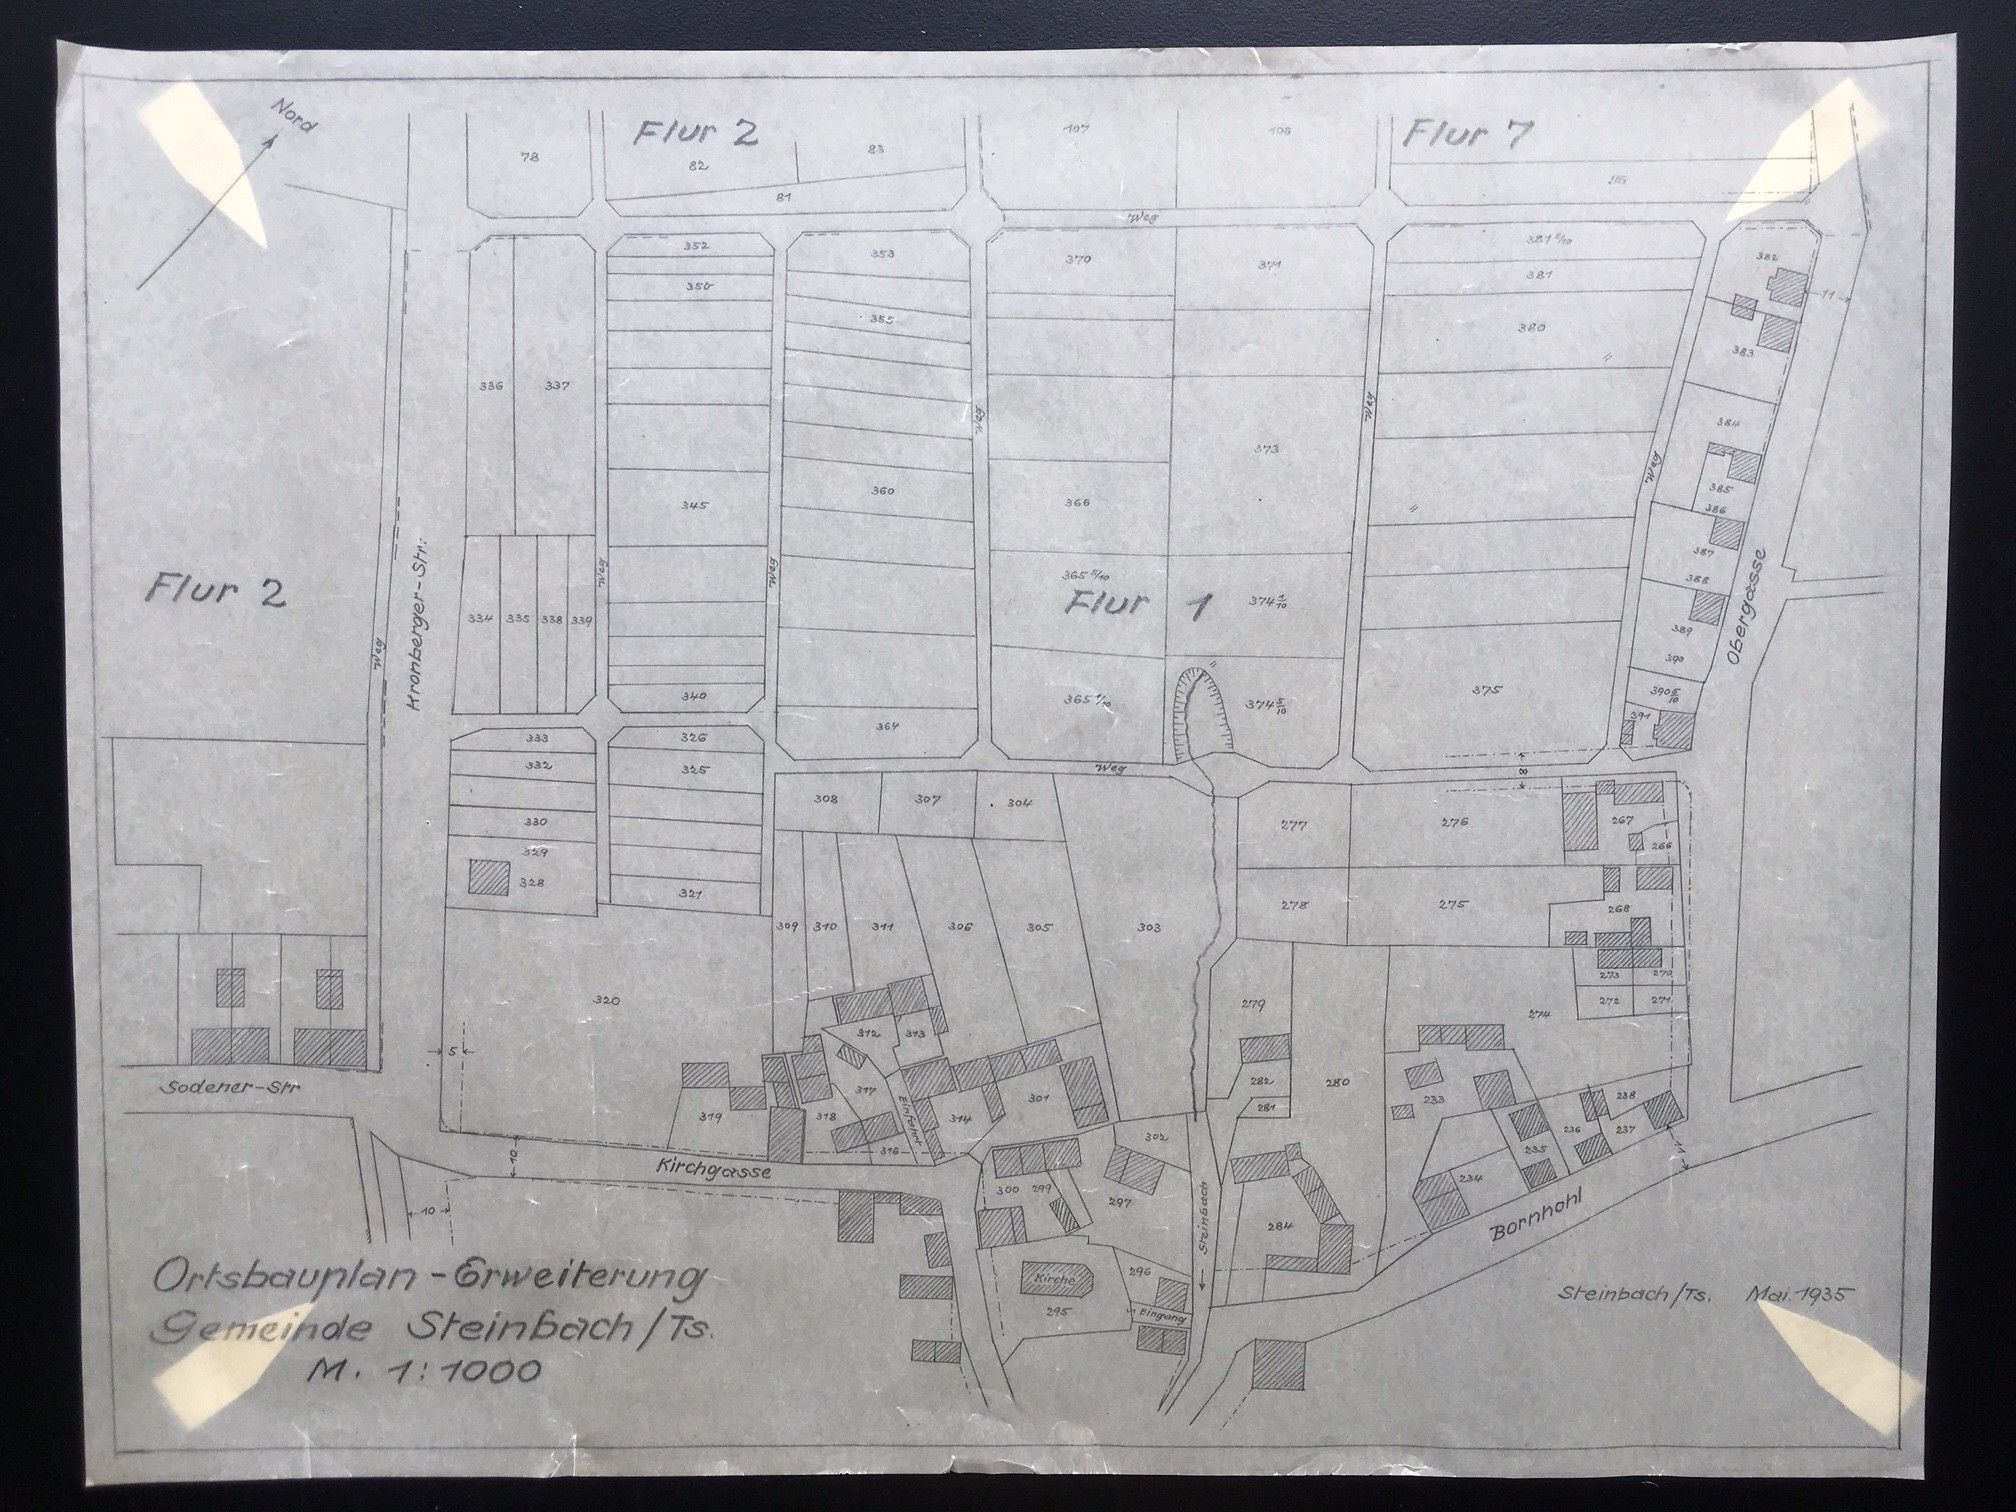 Manuskriptkarte, Ortsbauplan-Erweiterung Gemeinde Steinbach/Ts., 1935. (Taunus-Rhein-Main - Regionalgeschichtliche Sammlung Dr. Stefan Naas CC BY-NC-SA)